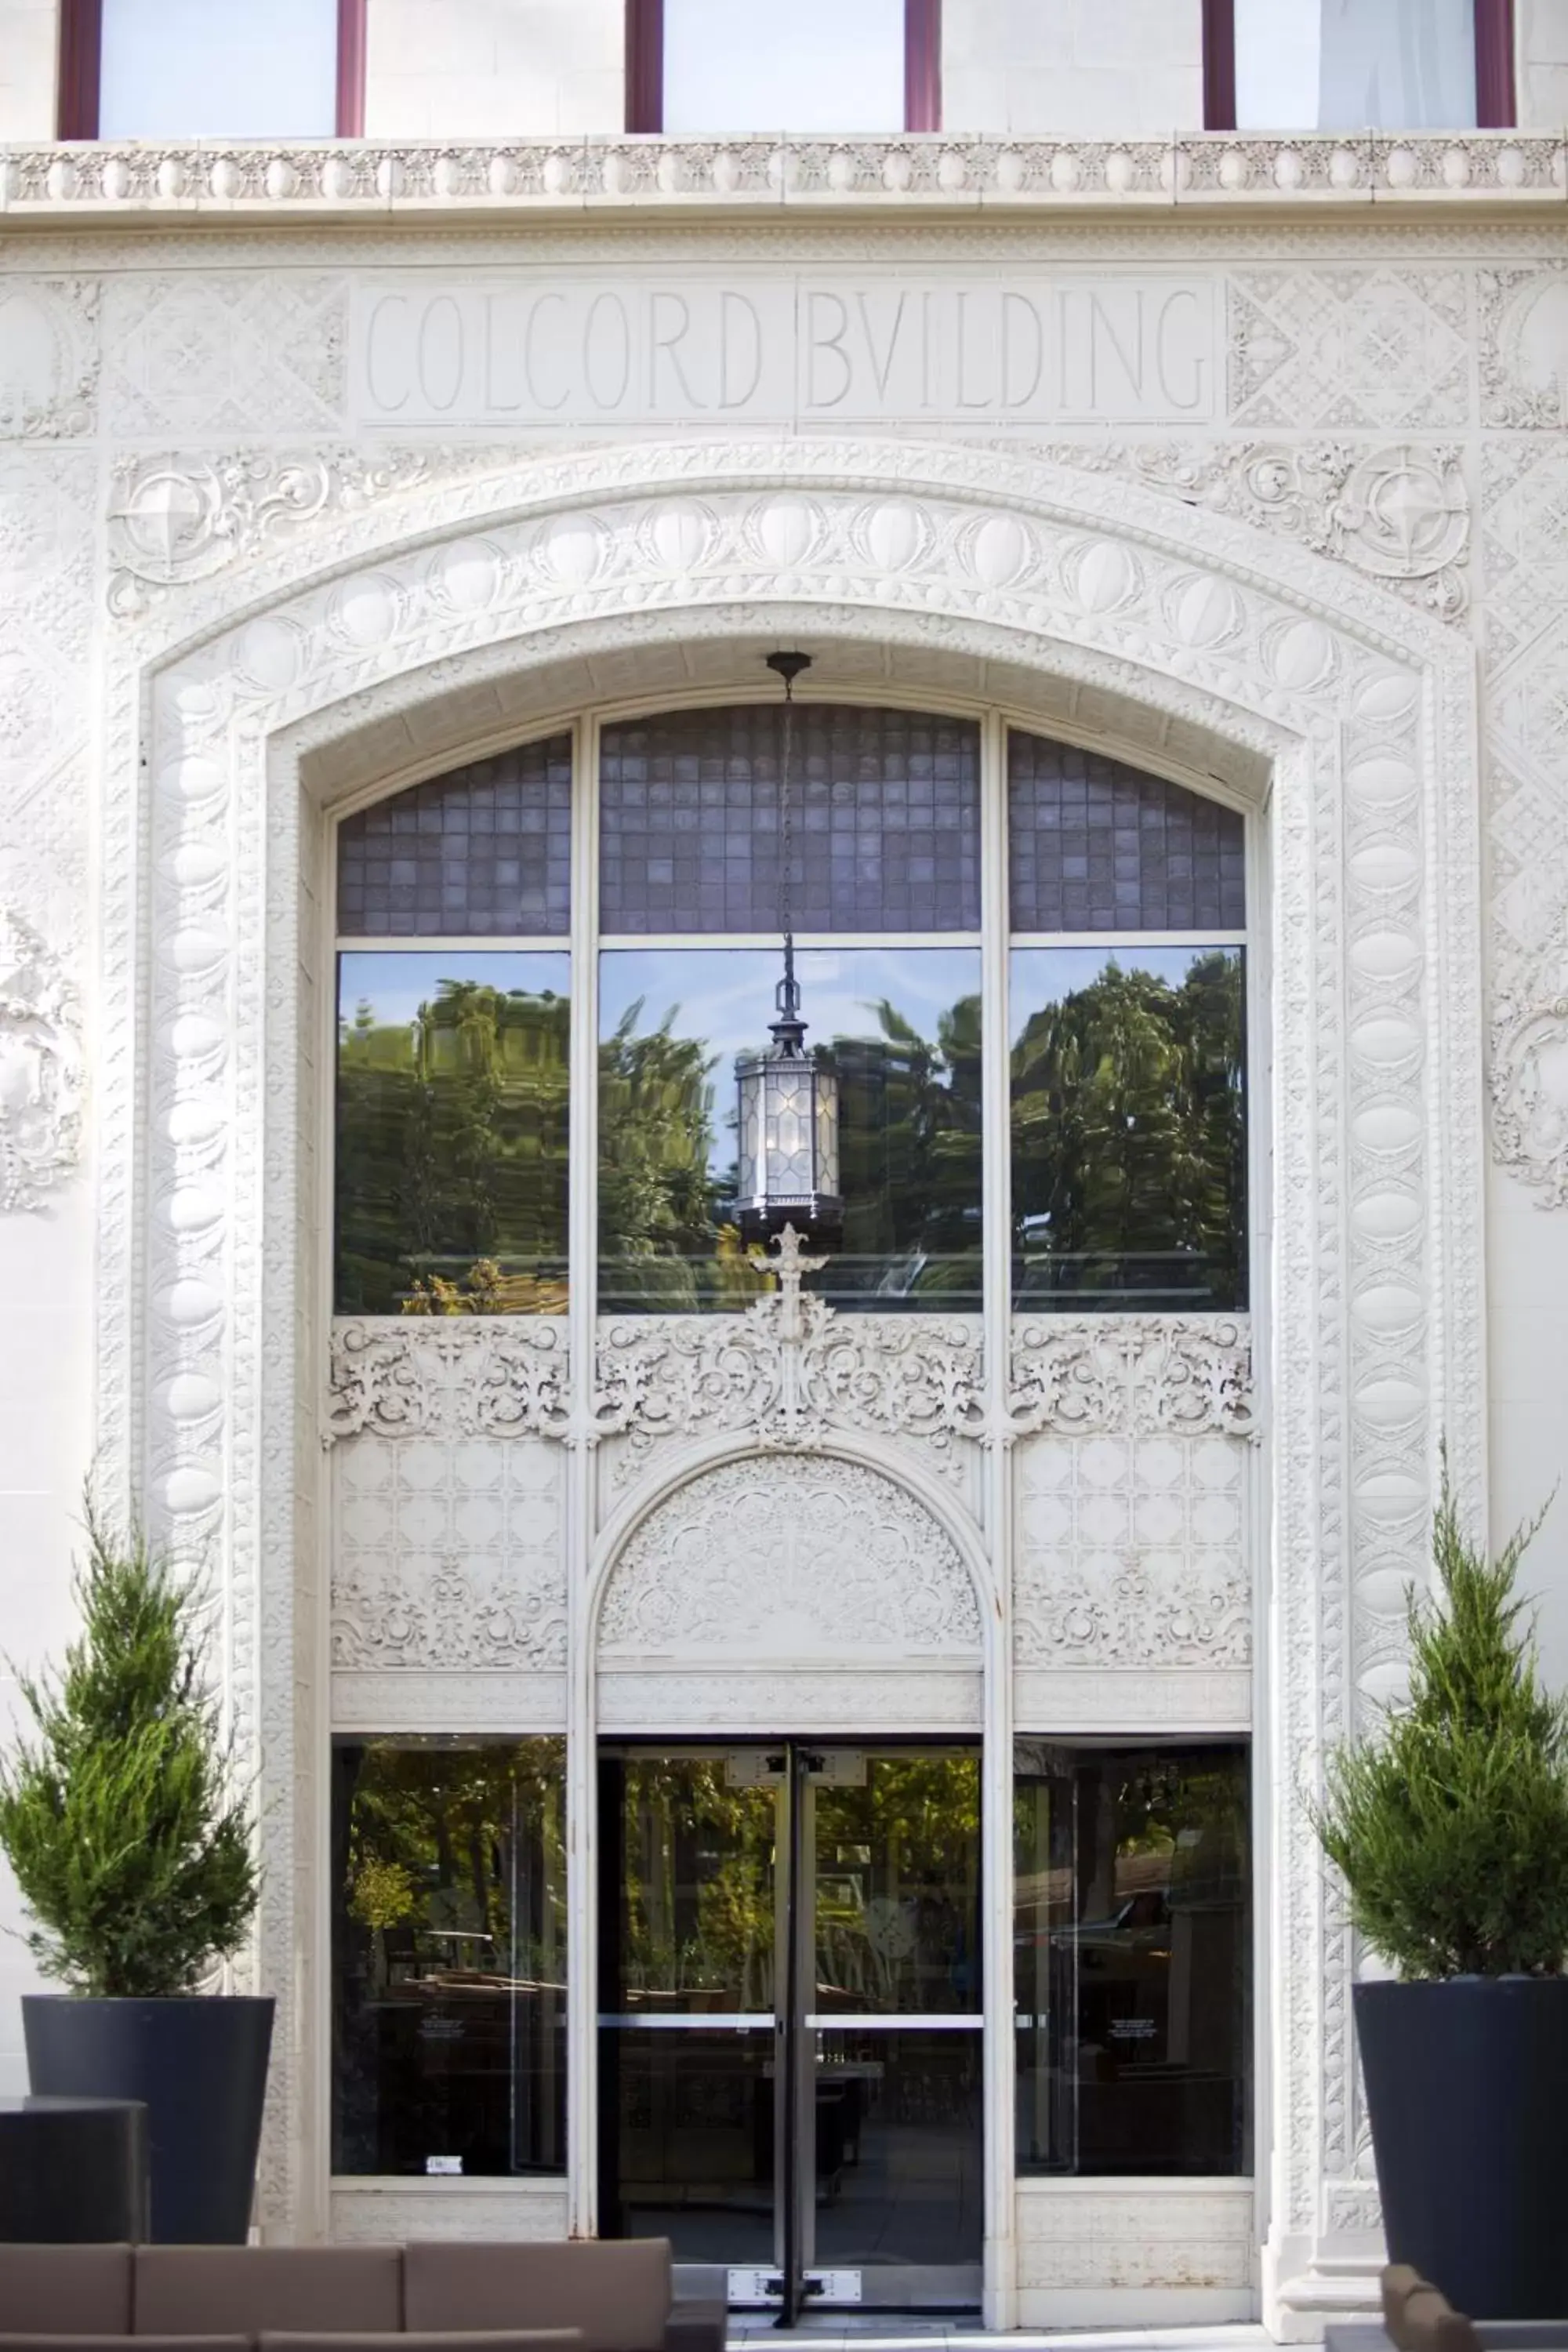 Facade/entrance in Colcord Hotel Oklahoma City, Curio Collection by Hilton